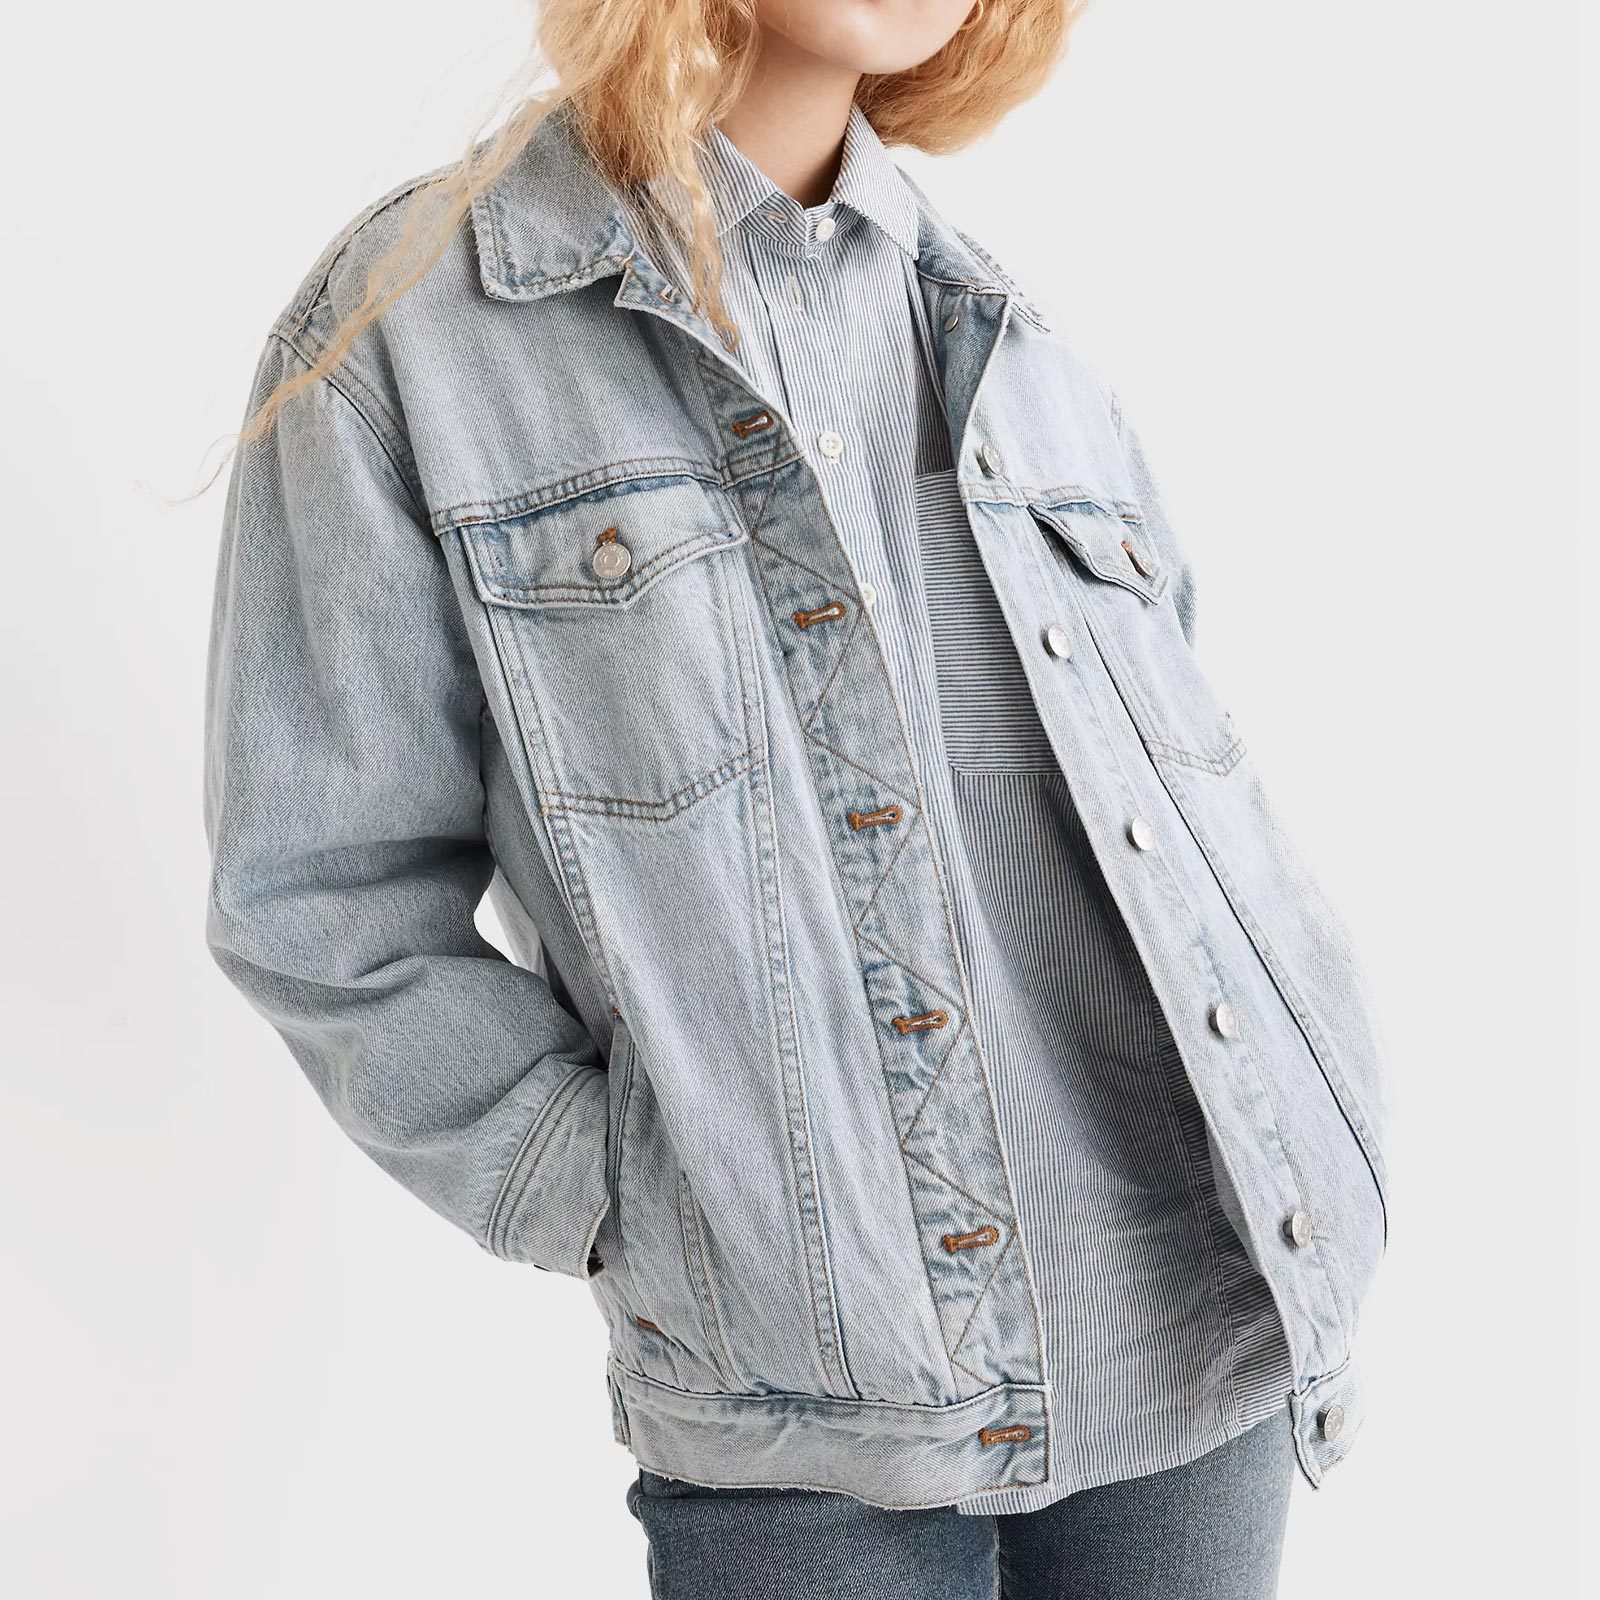 20 Best Jean Jackets For Women To Buy In 2023 Womens Denim Jackets 